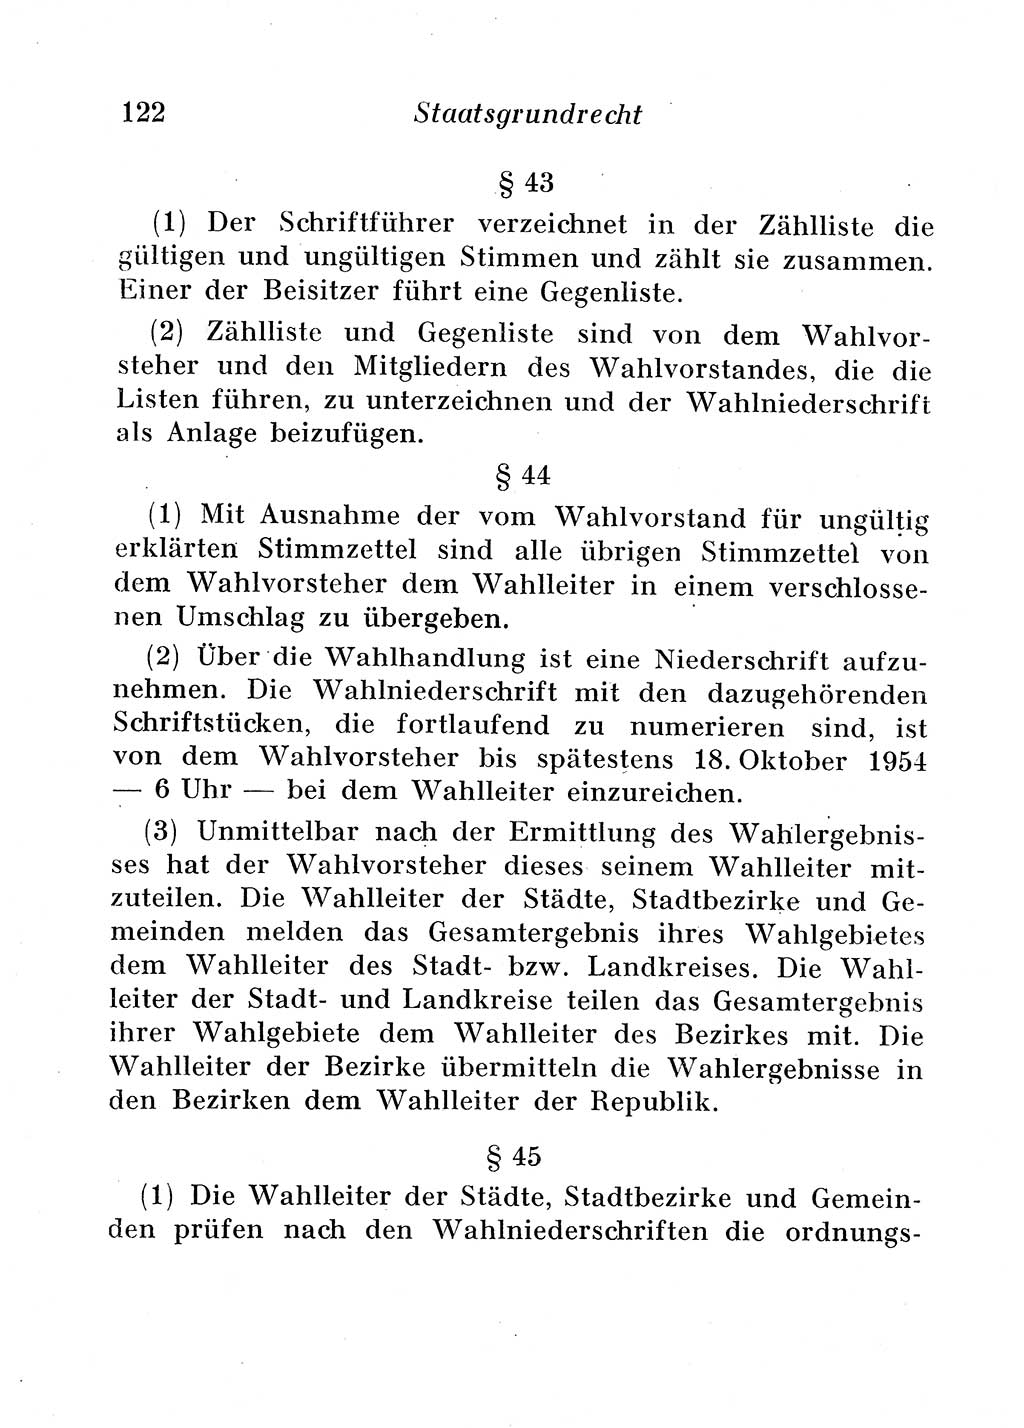 Staats- und verwaltungsrechtliche Gesetze der Deutschen Demokratischen Republik (DDR) 1958, Seite 122 (StVerwR Ges. DDR 1958, S. 122)